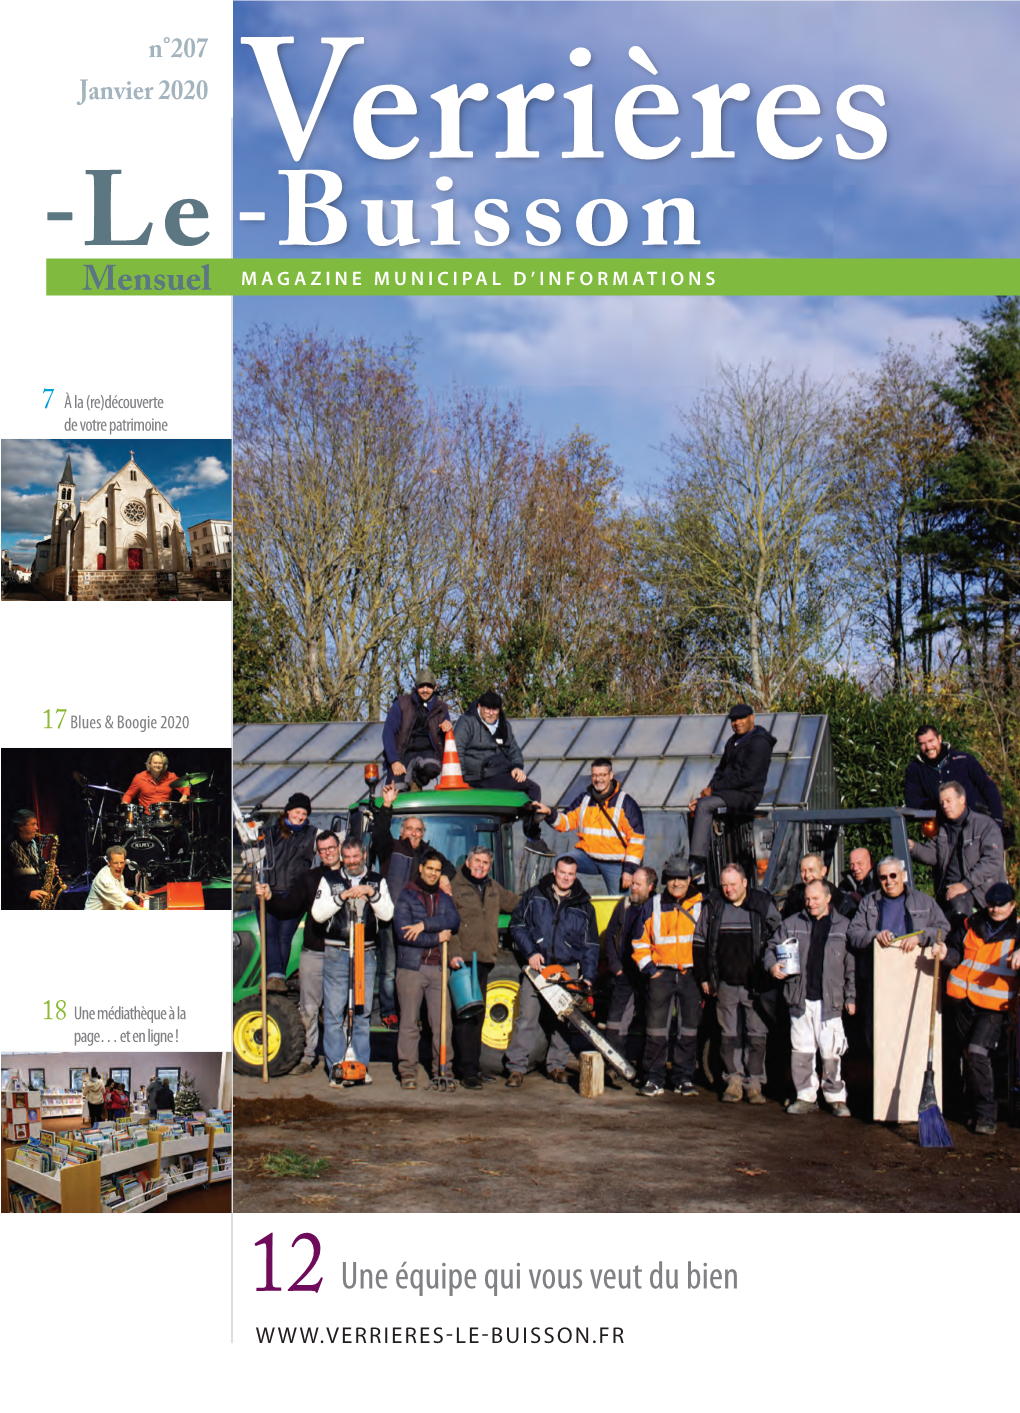 Verrieres-Le-Buisson 207Web